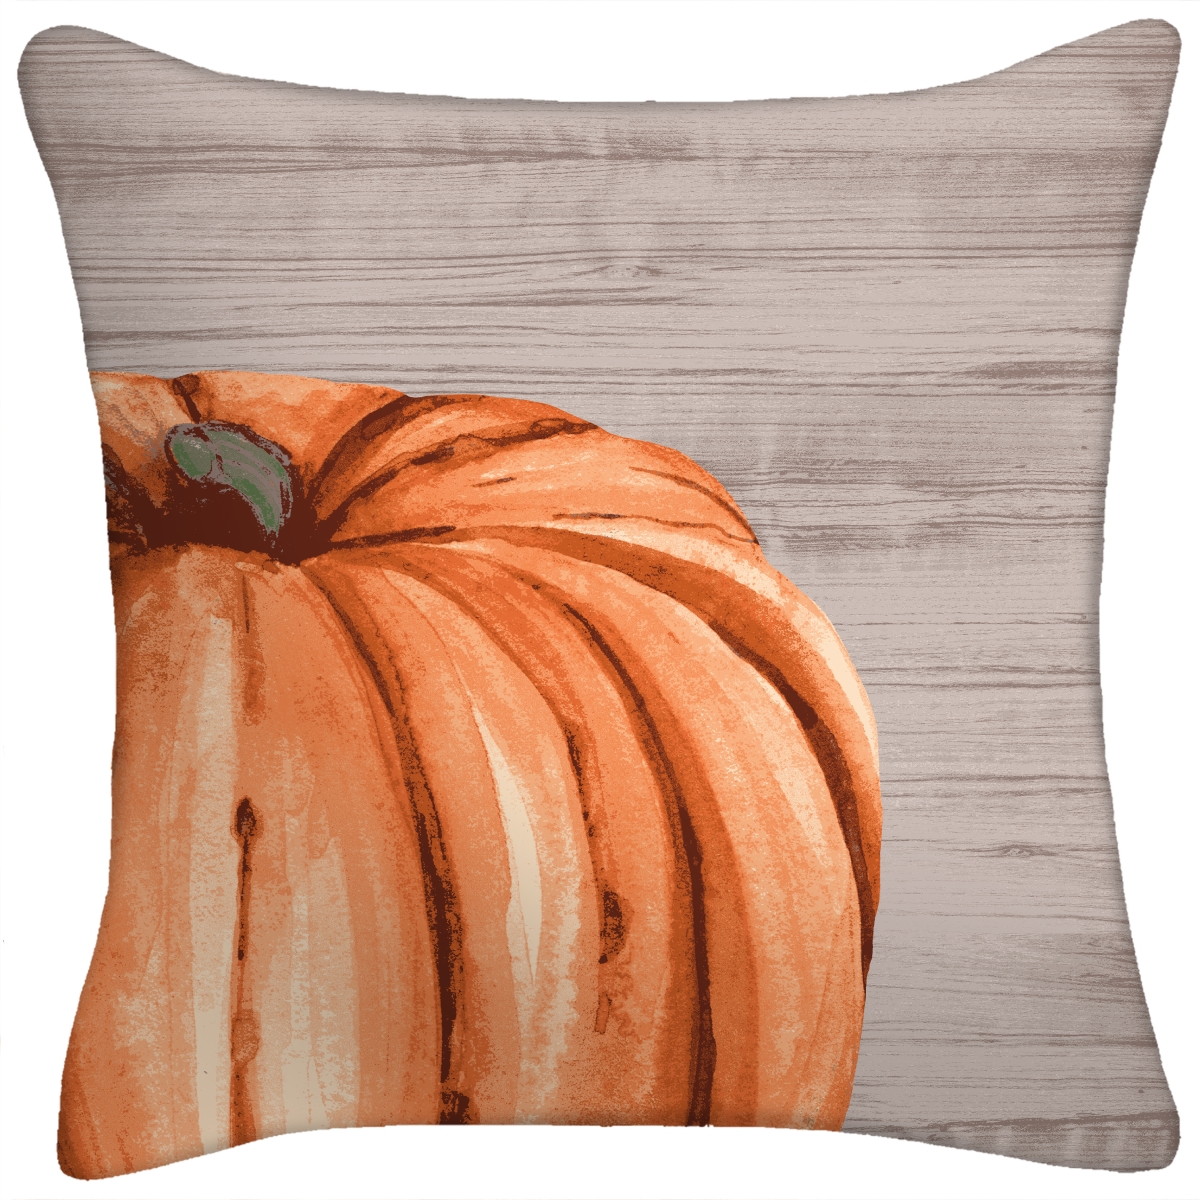 9952pk1-507dpt 16 In. Harvest Pumpkin Toss Pillow